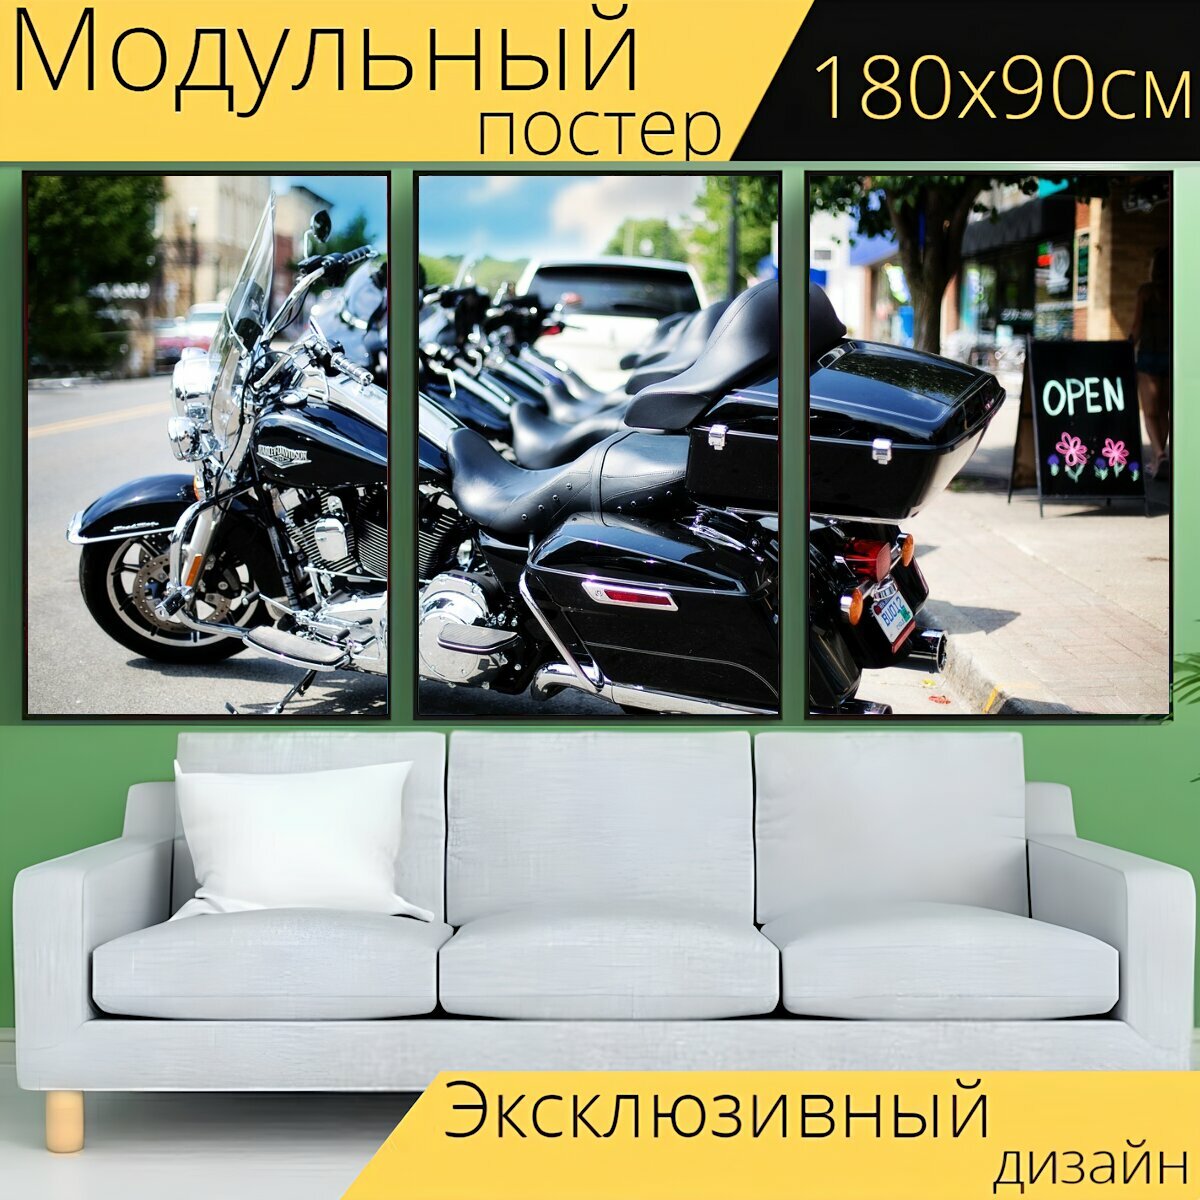 Модульный постер "Мотоциклы, харлей, мотоцикл" 180 x 90 см. для интерьера